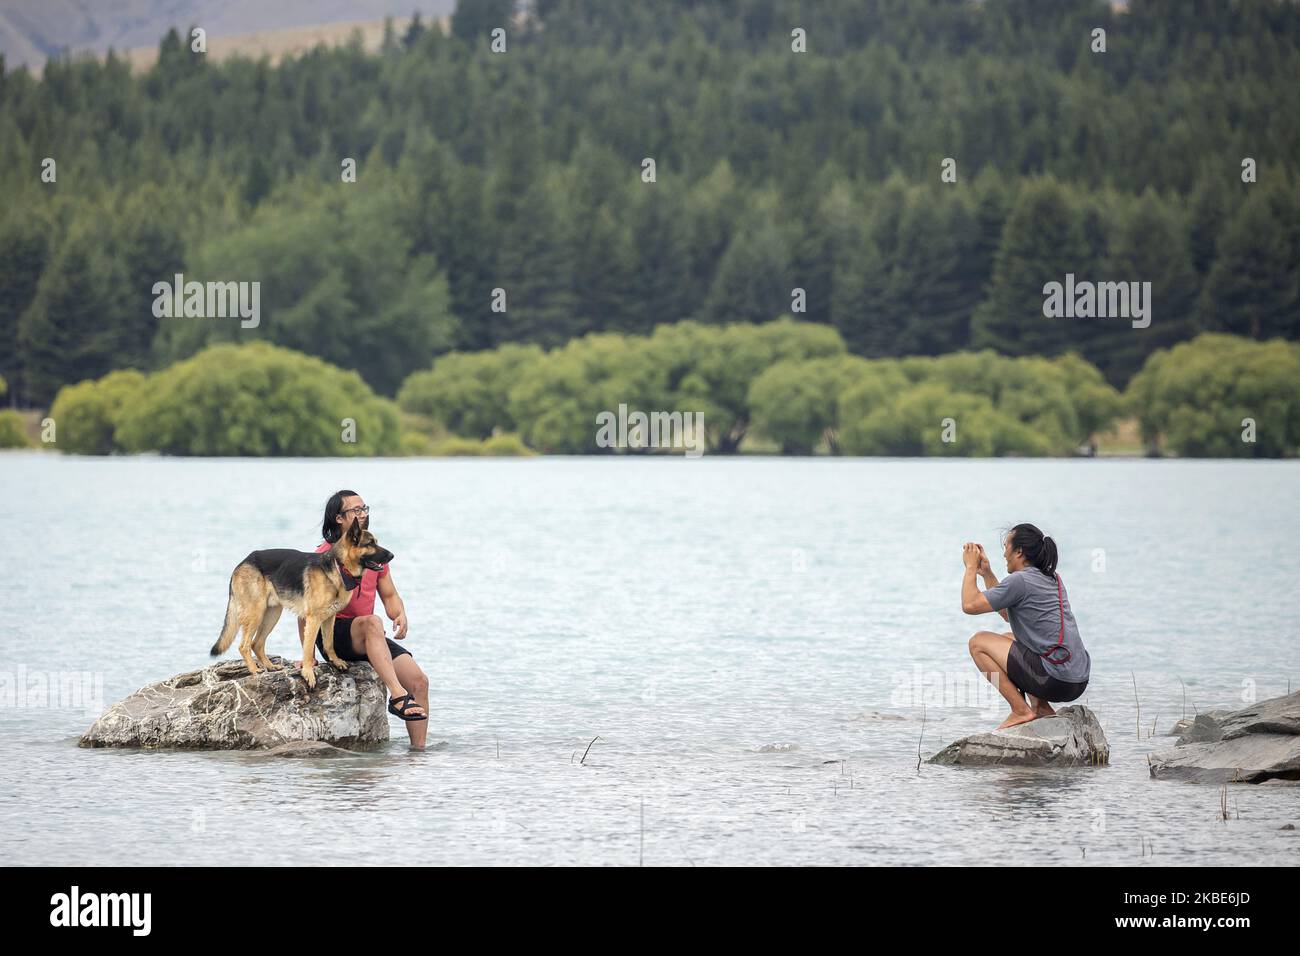 Am 10. Januar 2020 posiert ein Besucher mit seinem Hund am See TekapoÂ auf der zentralen Südinsel von New ZealandÂ für Fotos.Â Tekapo ist eine der beliebtesten Touristenattraktionen Neuseelands.Â Â (Foto: Sanka Vidanagama/NurPhoto) Stockfoto